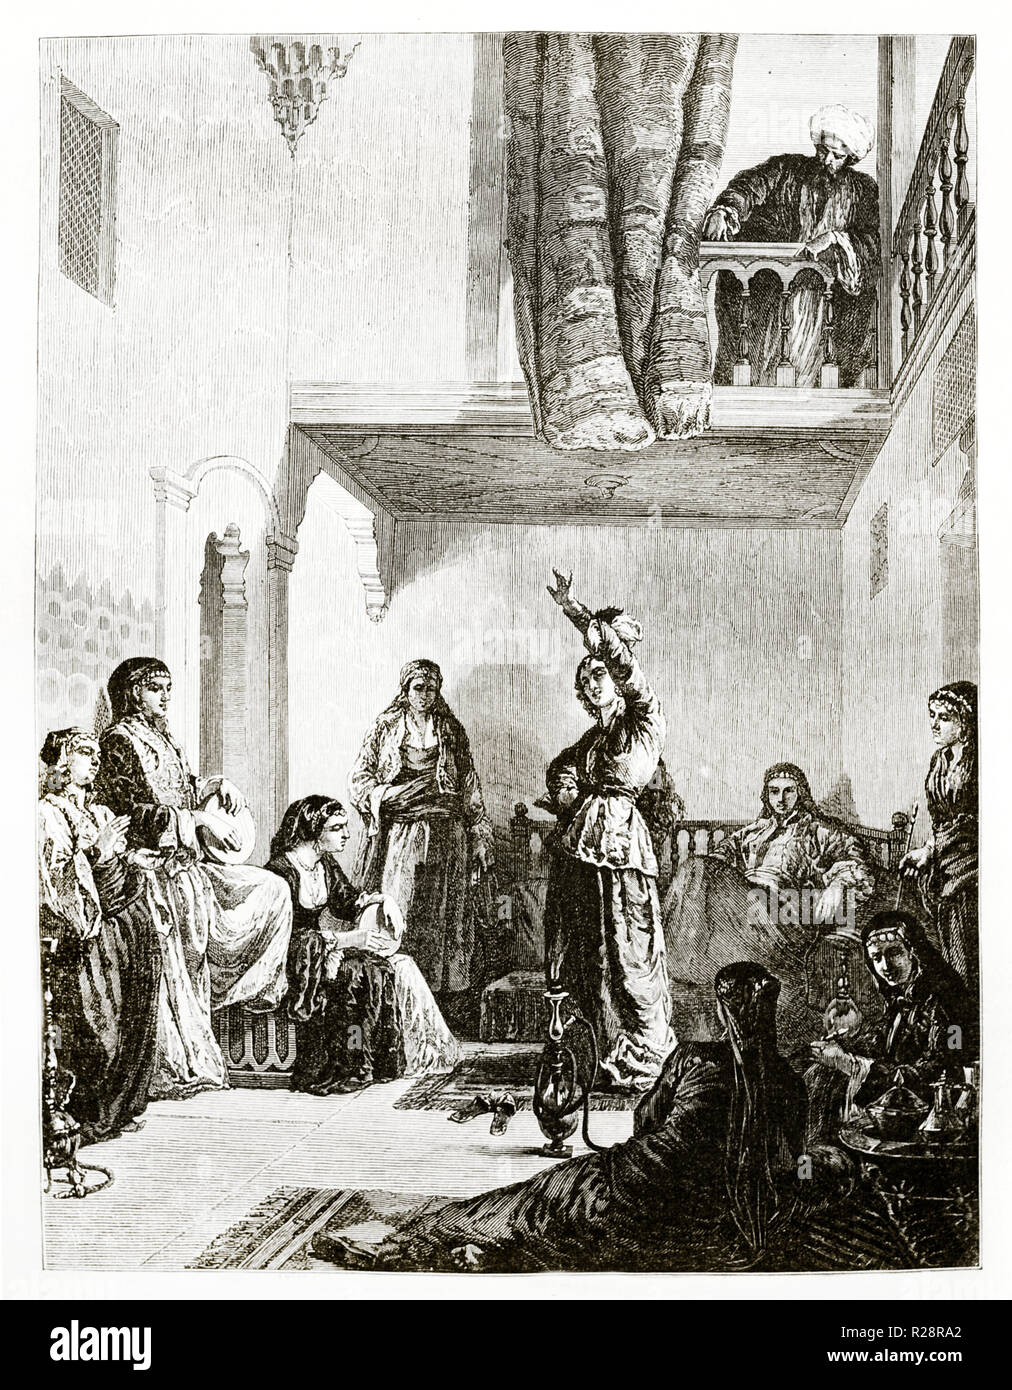 Vecchia immagine raffigurante il considerando in turco harem. Da Mettais dopo Bida, publ. in Le Tour du Monde, Parigi, 1863 Foto Stock